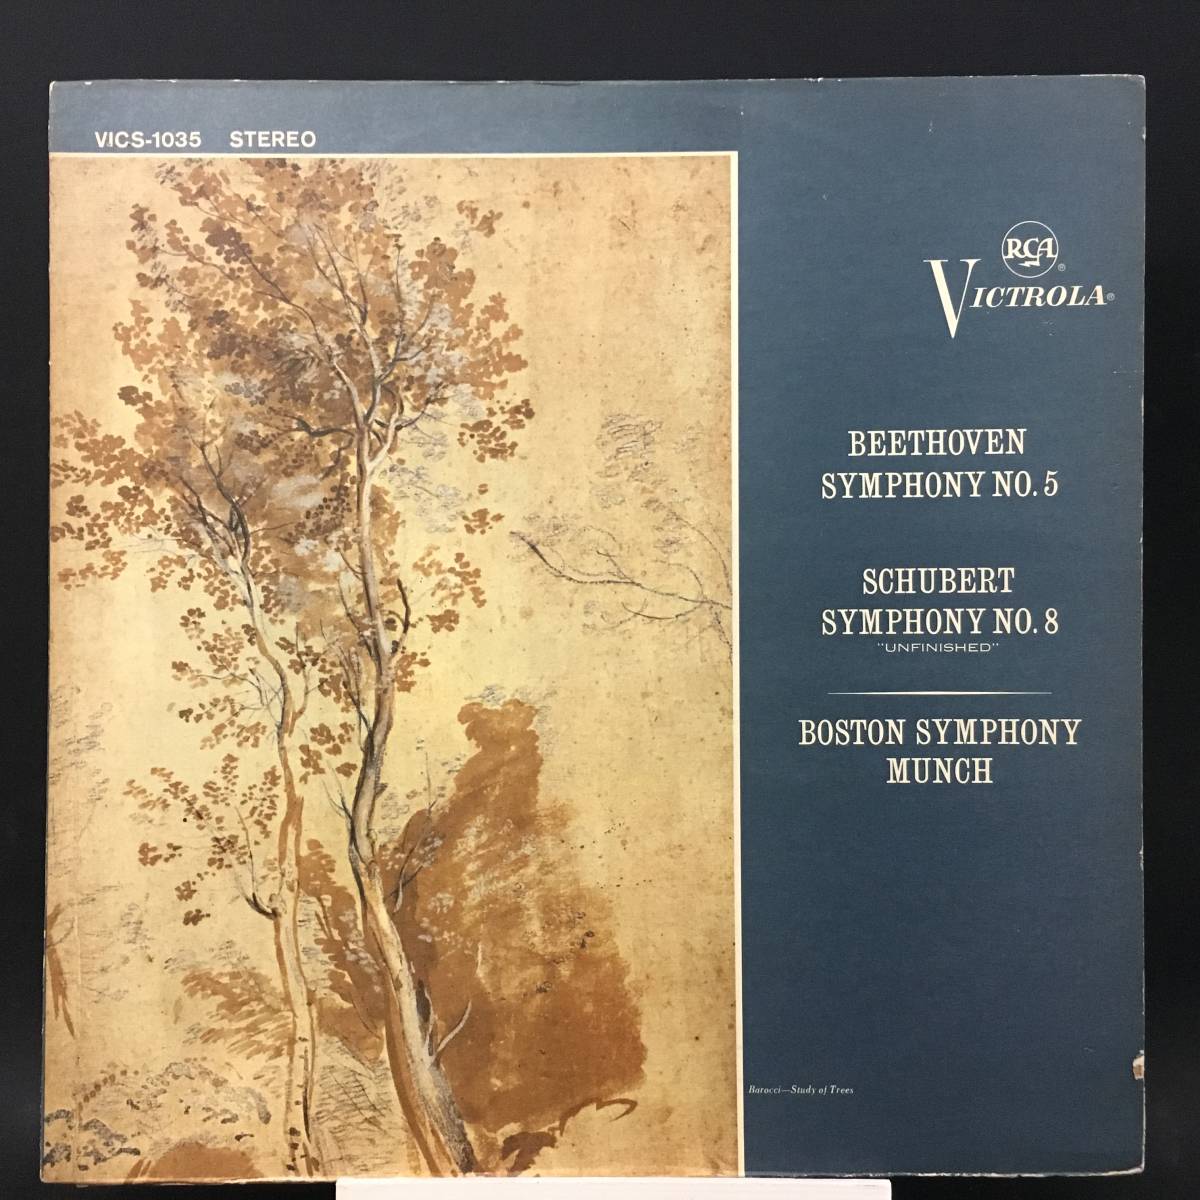 【即発送可能】 ◆ Beethoven ◆ Schubert 深溝 米盤 VICTOROLA ◆ 交響曲